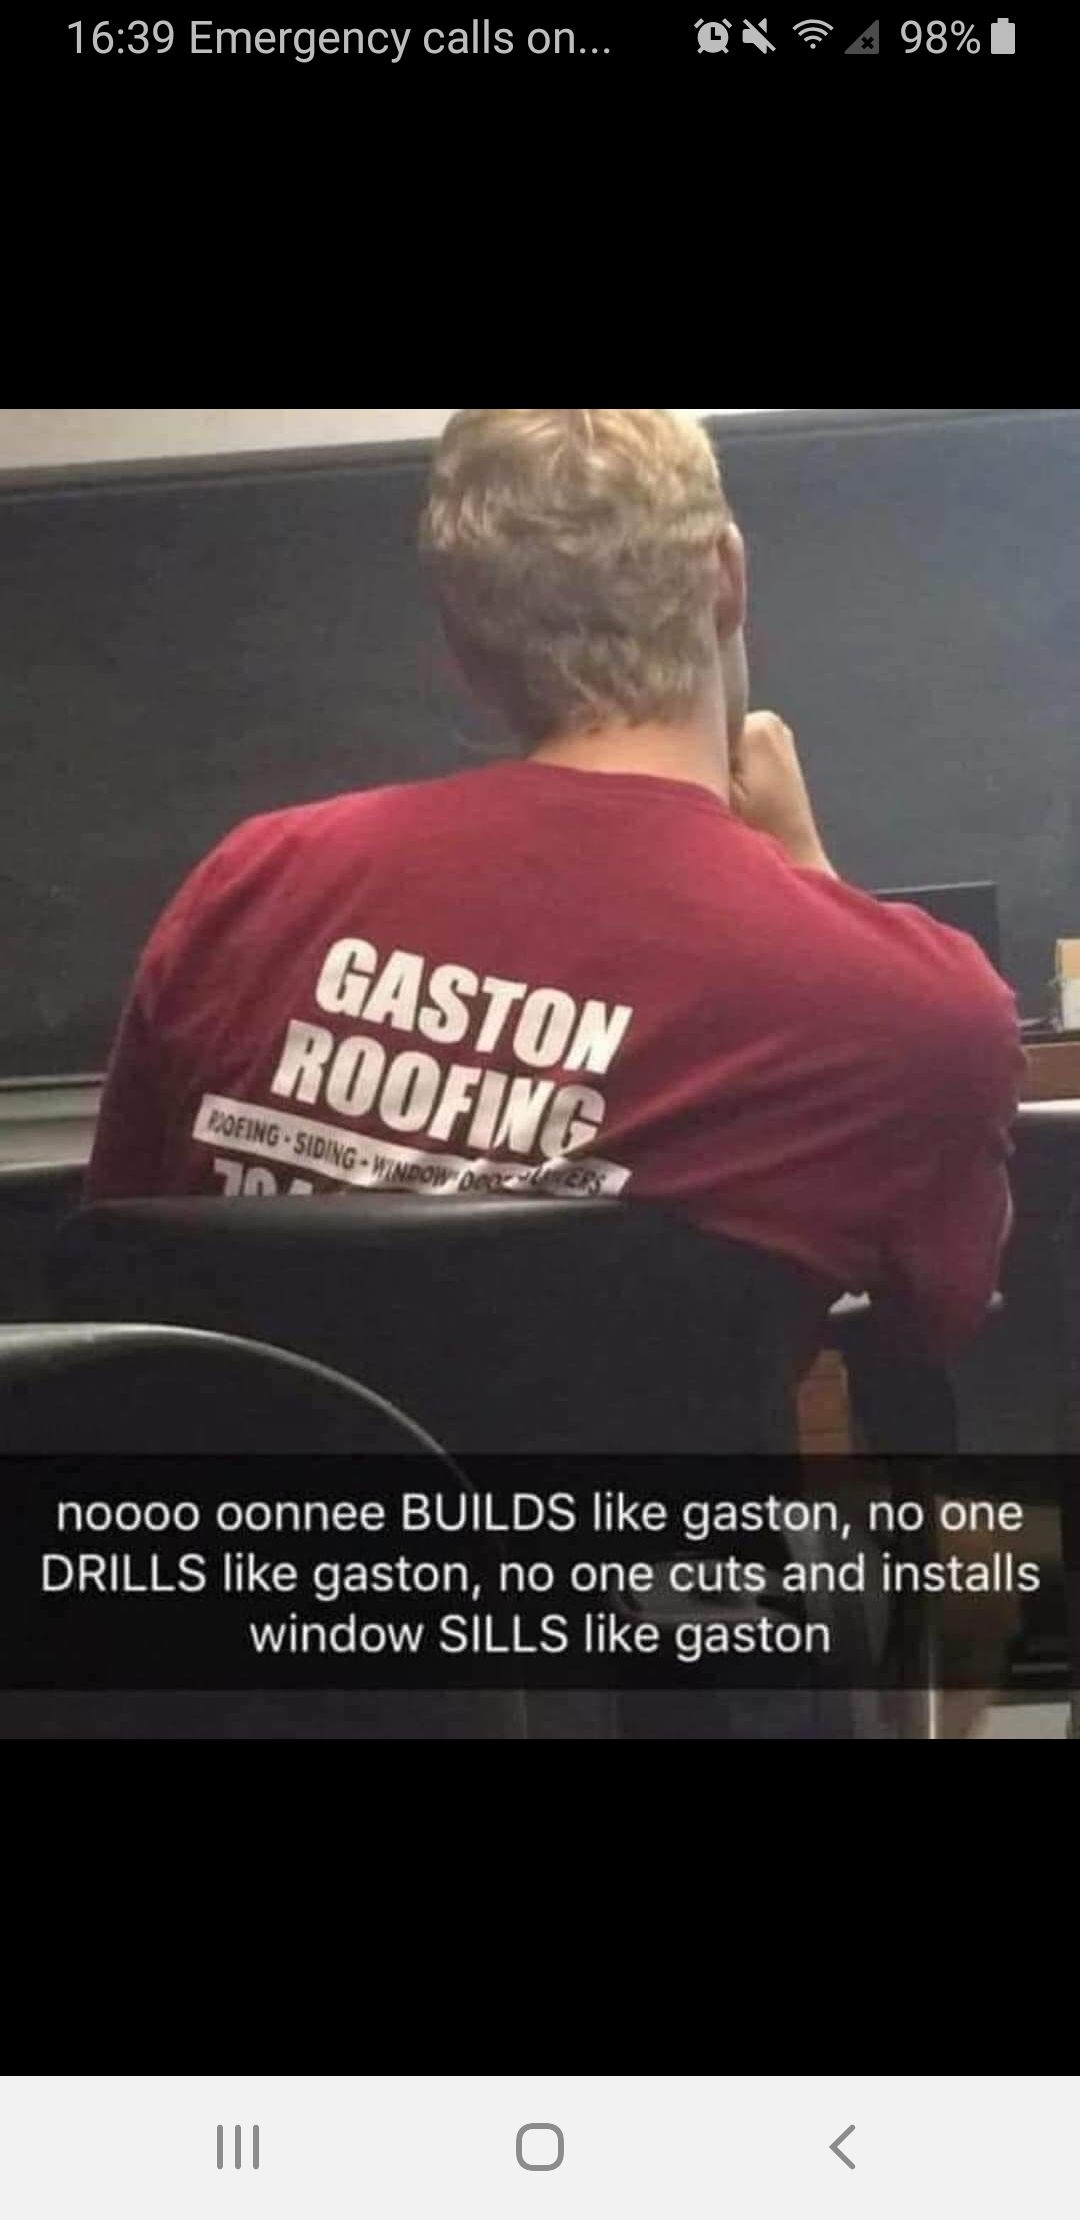 Man what a guy that Gaston!